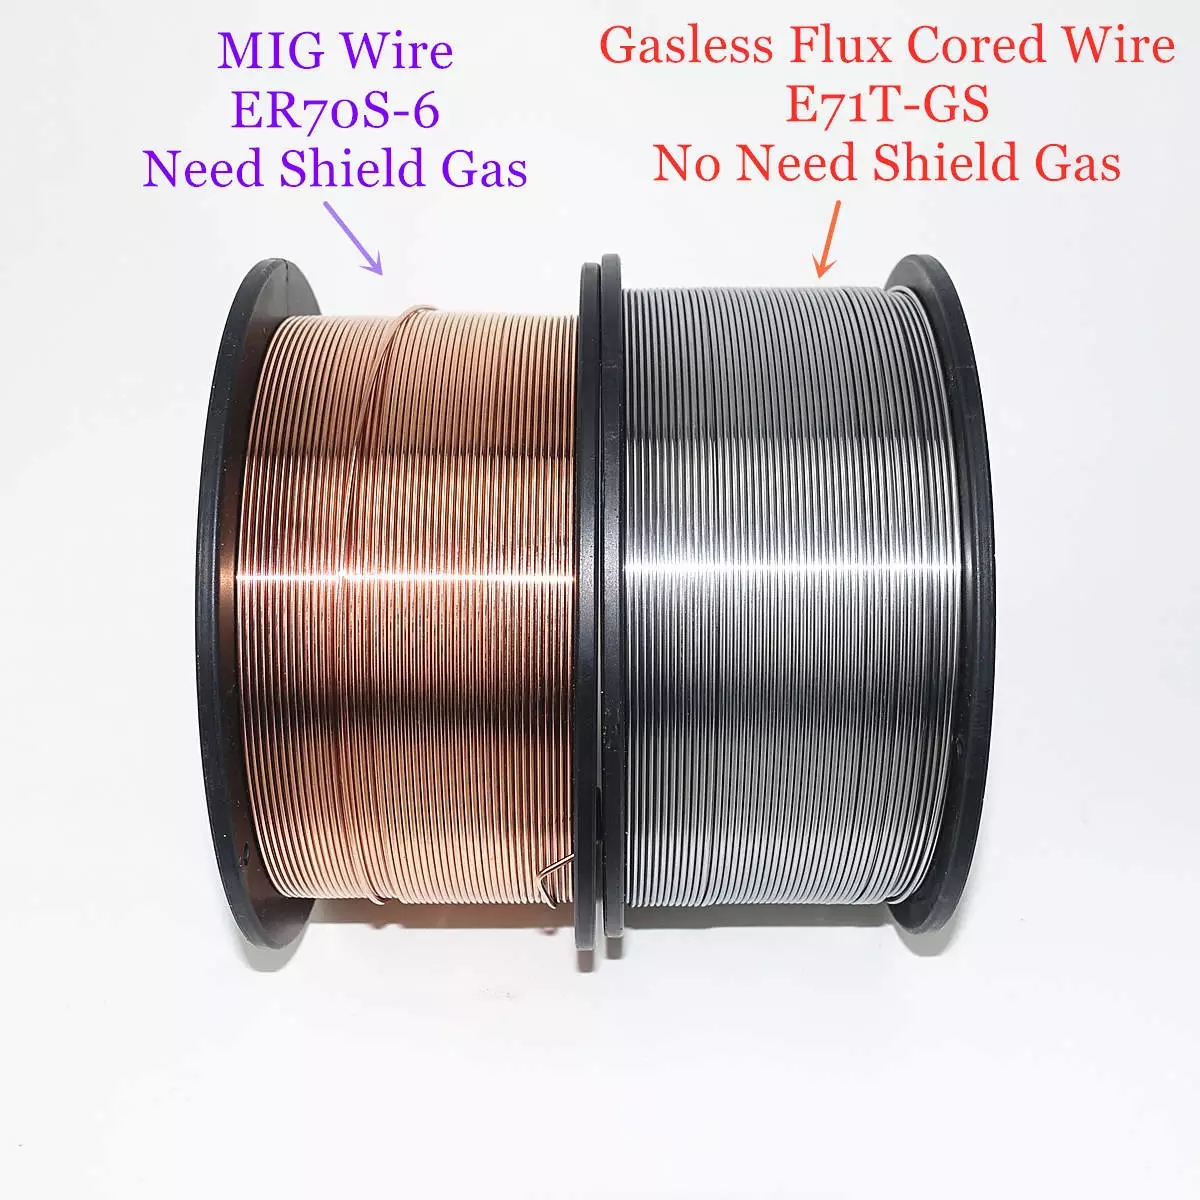 E71T-GS-Cored-Gasless-Flux-Welding-Wire-no-Gaas-or-MIG-Welding-Wire-ER70S-6-06--08--09mm-1kg-Steel-W-1822237-6